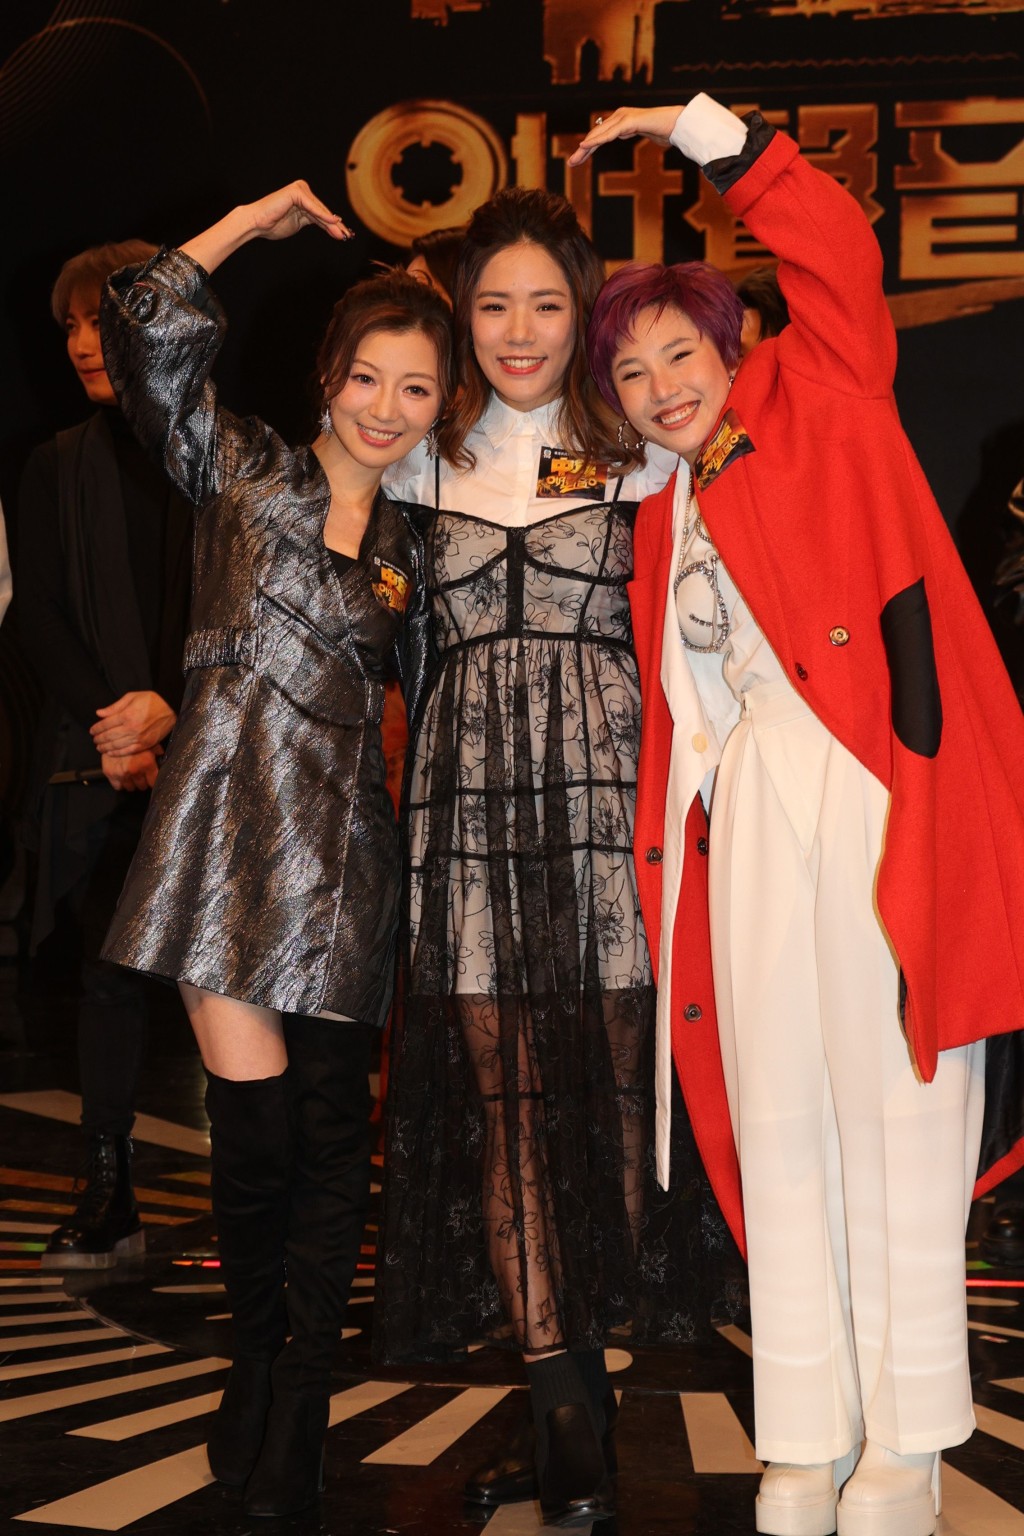 三位女生陳蒨葶、林若盈和陳俞霏說參加比賽最開心是贏到寶貴的友誼。